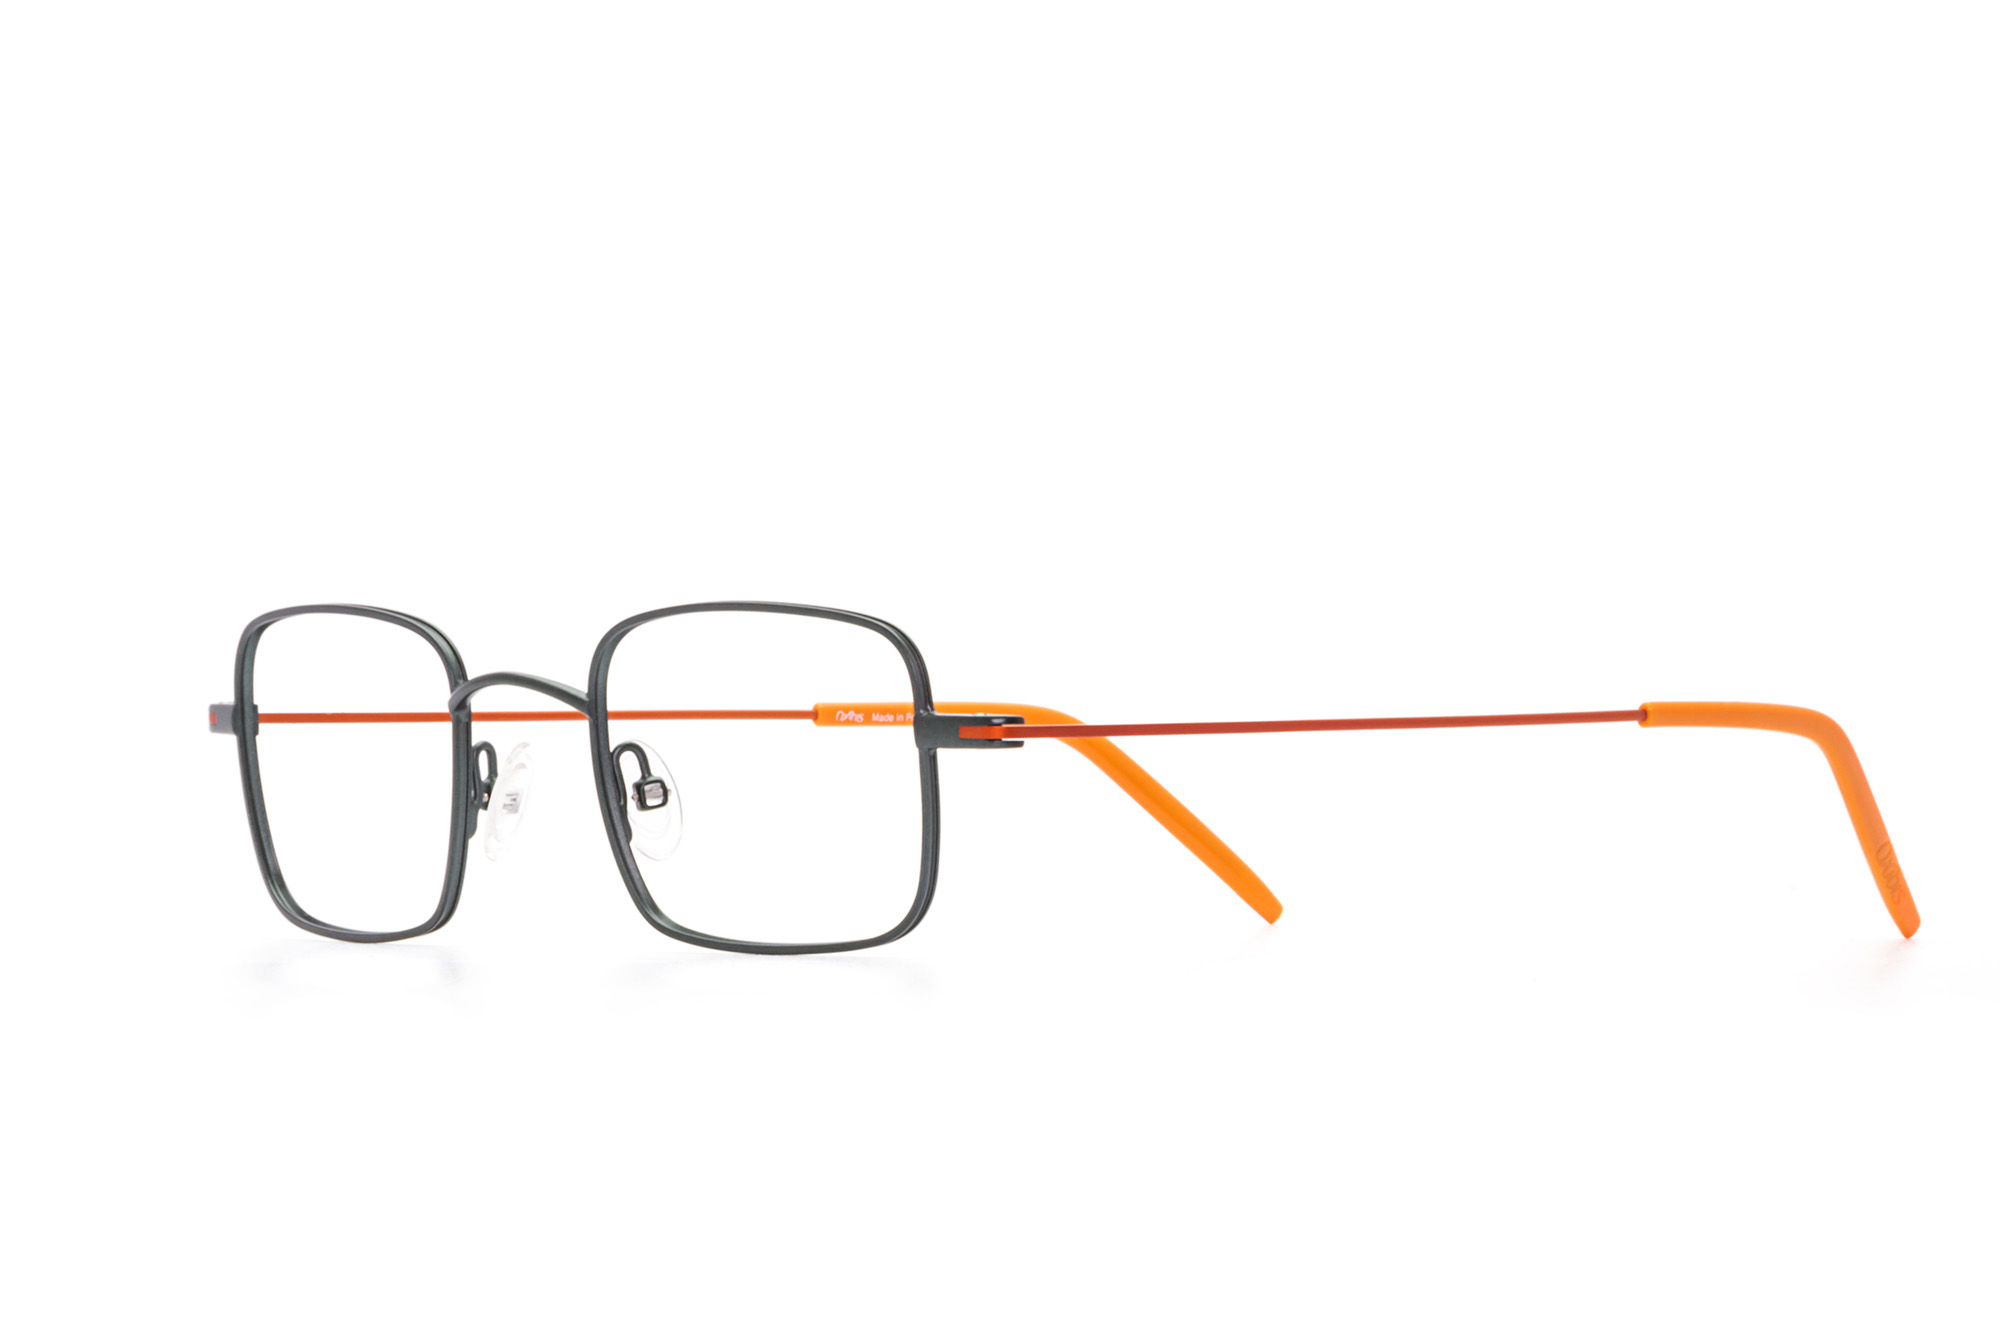 Kullanıma hazır optik tarzda işlenmiş camları ve optik uyumlu çerçevesiyle Oxibis Ippy IP5C4 45 küçük ekartman yeşil ve turuncu renkli dikdörtgen model unisex gözlüğü optisyen veya gözlükçülerin sunacağı numarasız veya numaralı cam özelleştirmeleriyle size en yakın gözlükçüden satın alabilirsiniz.